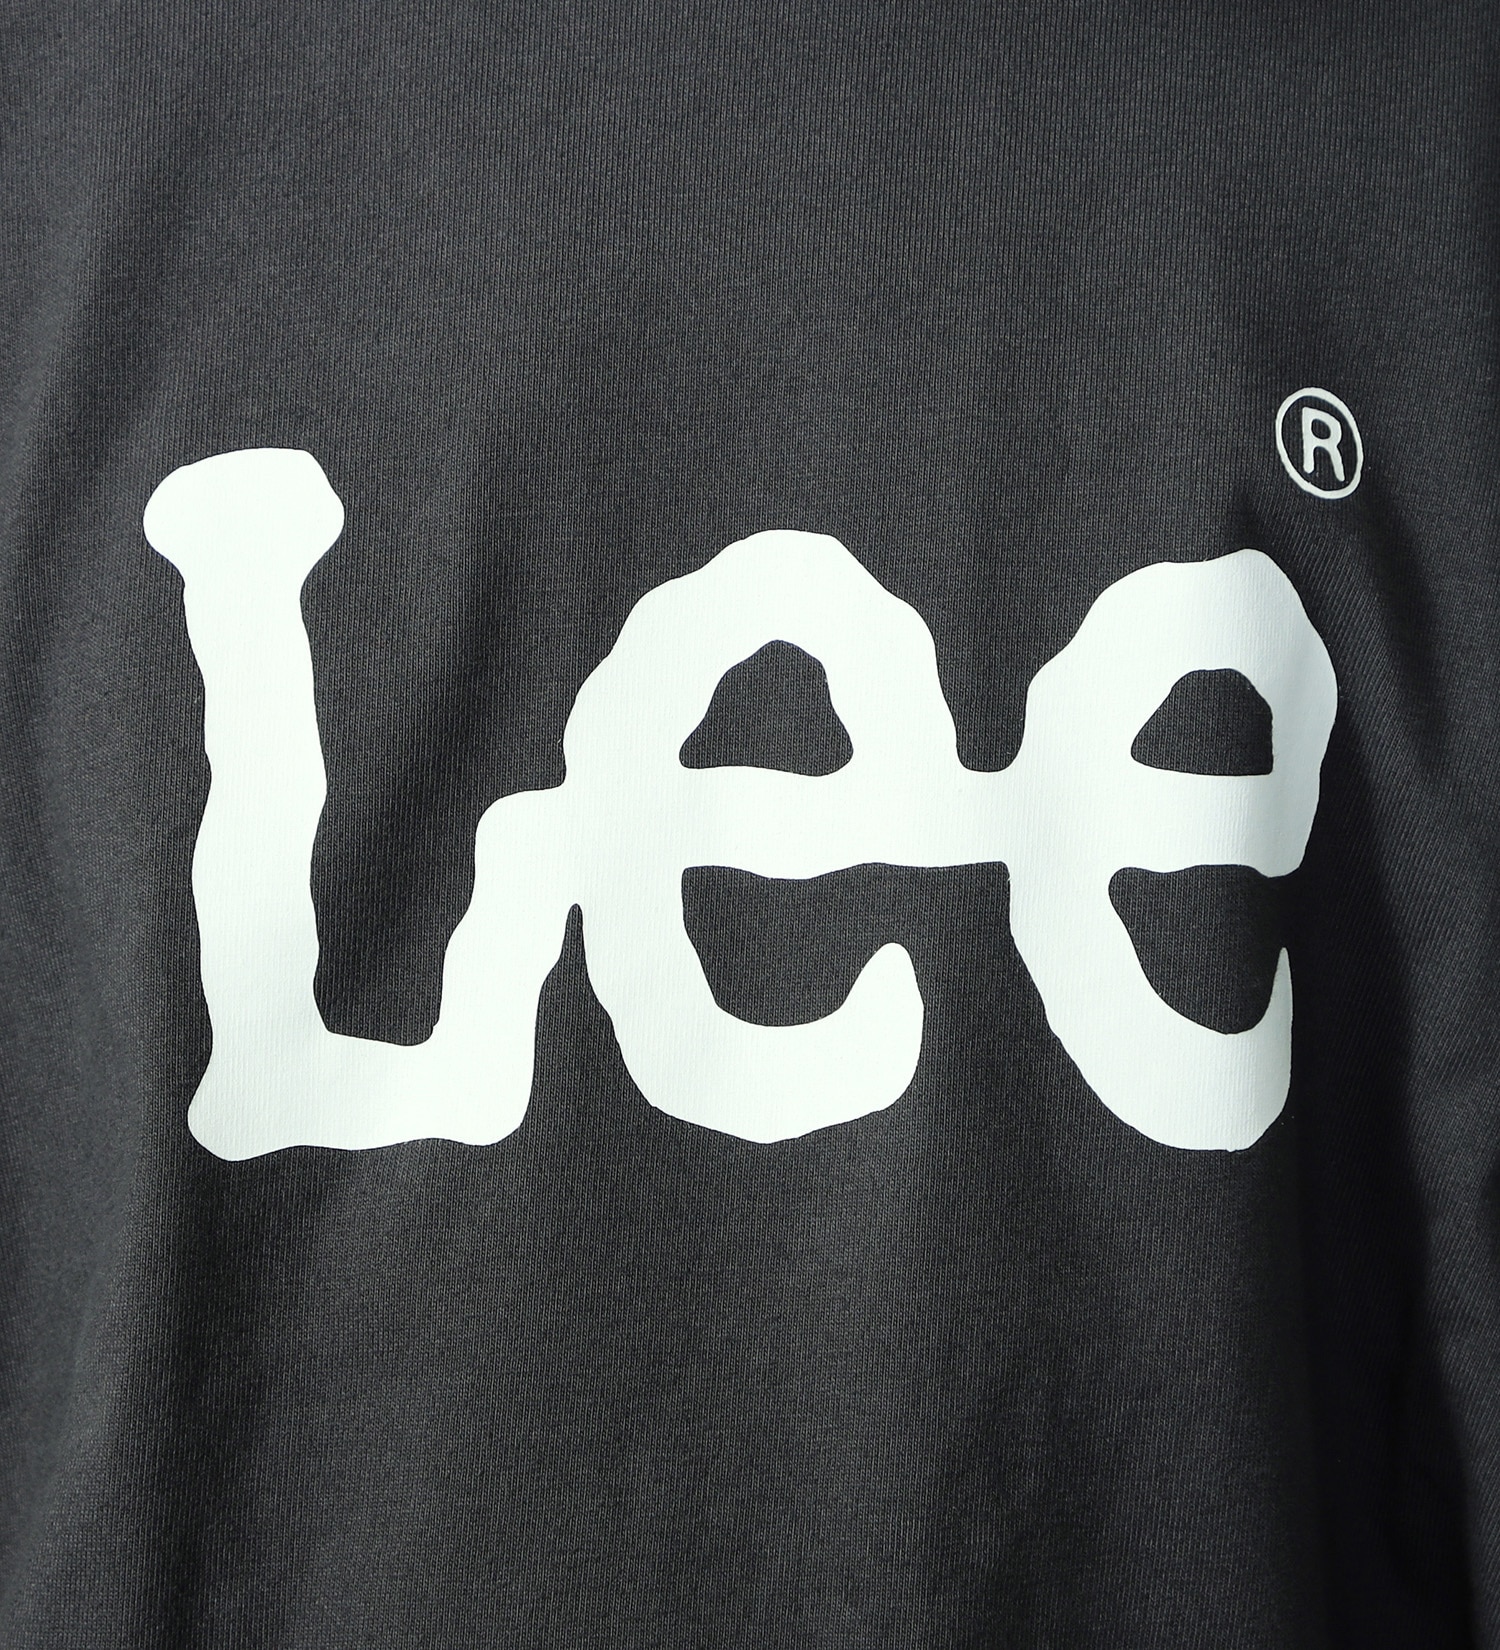 Lee(リー)の【ポイントアップ対象】【SUPER SIZED】Lee LOGO ショートスリーブTee|トップス/Tシャツ/カットソー/メンズ|チャコールグレー